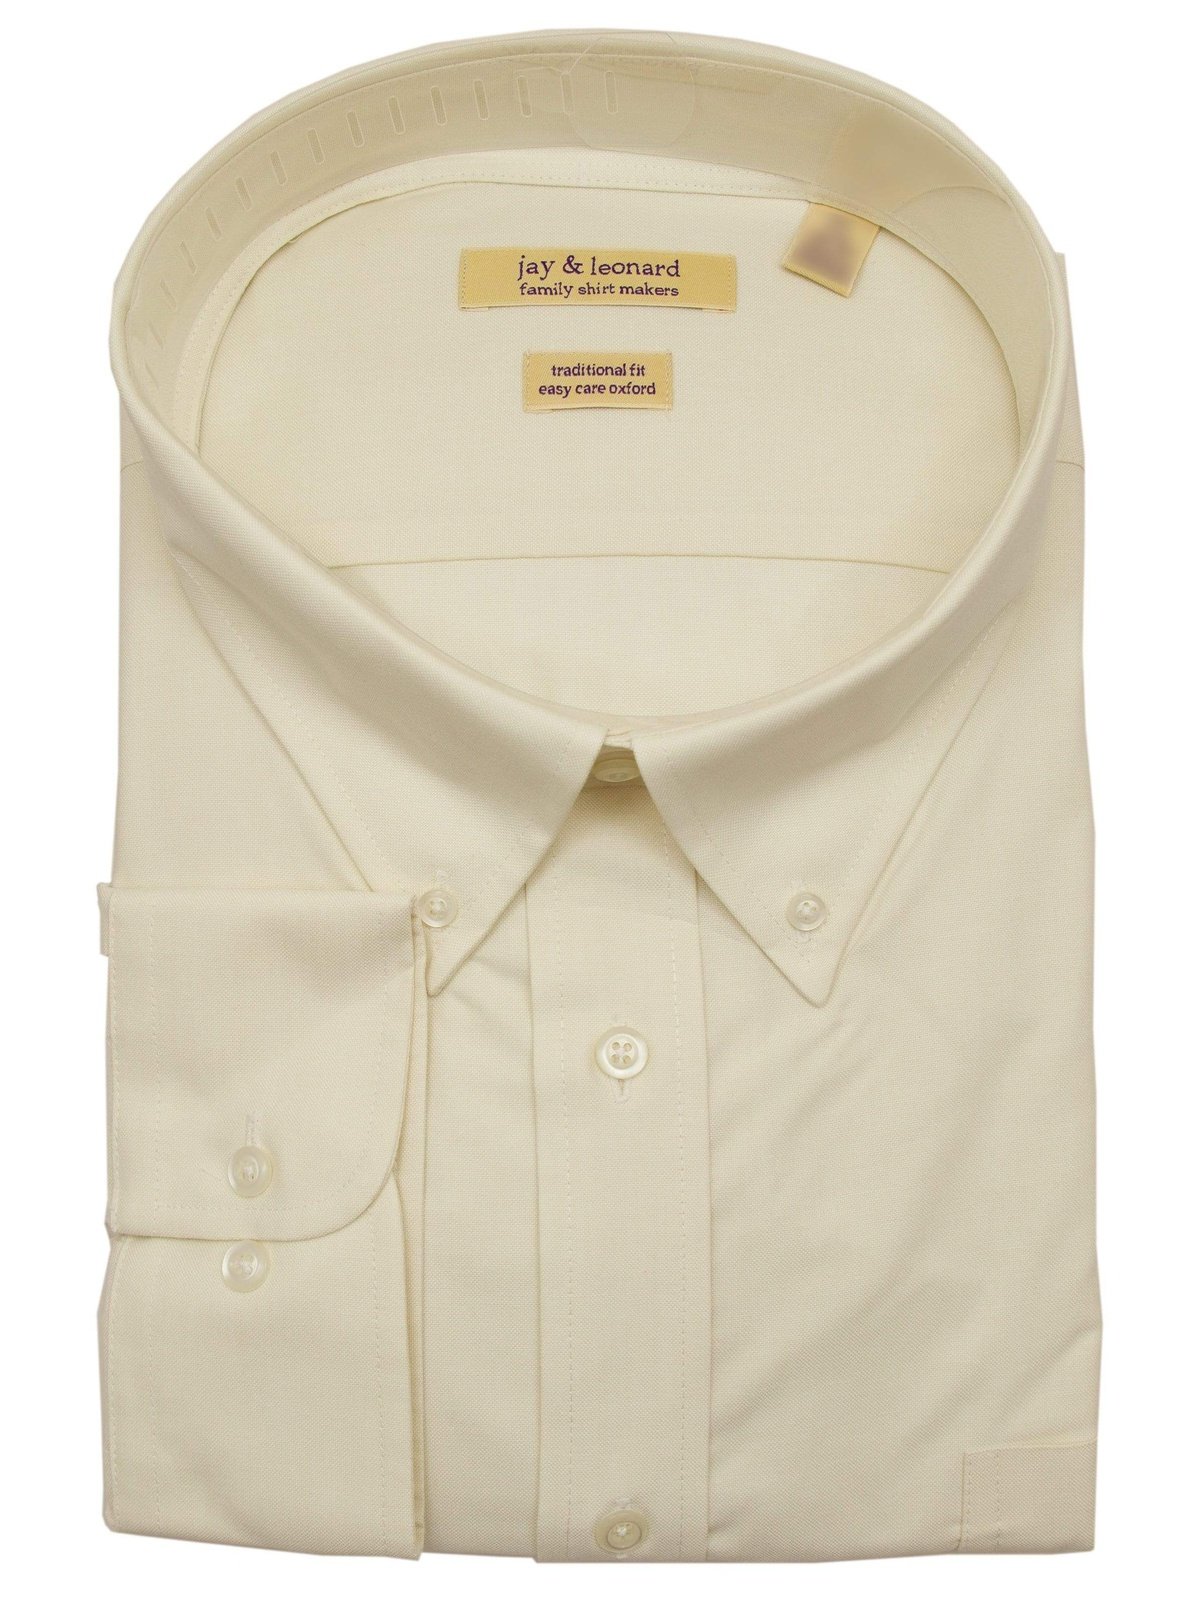 Brand J SHIRTS Mens Cotton Solid Ecru Regular Fit Button-Down Collar Oxford Dress Shirt